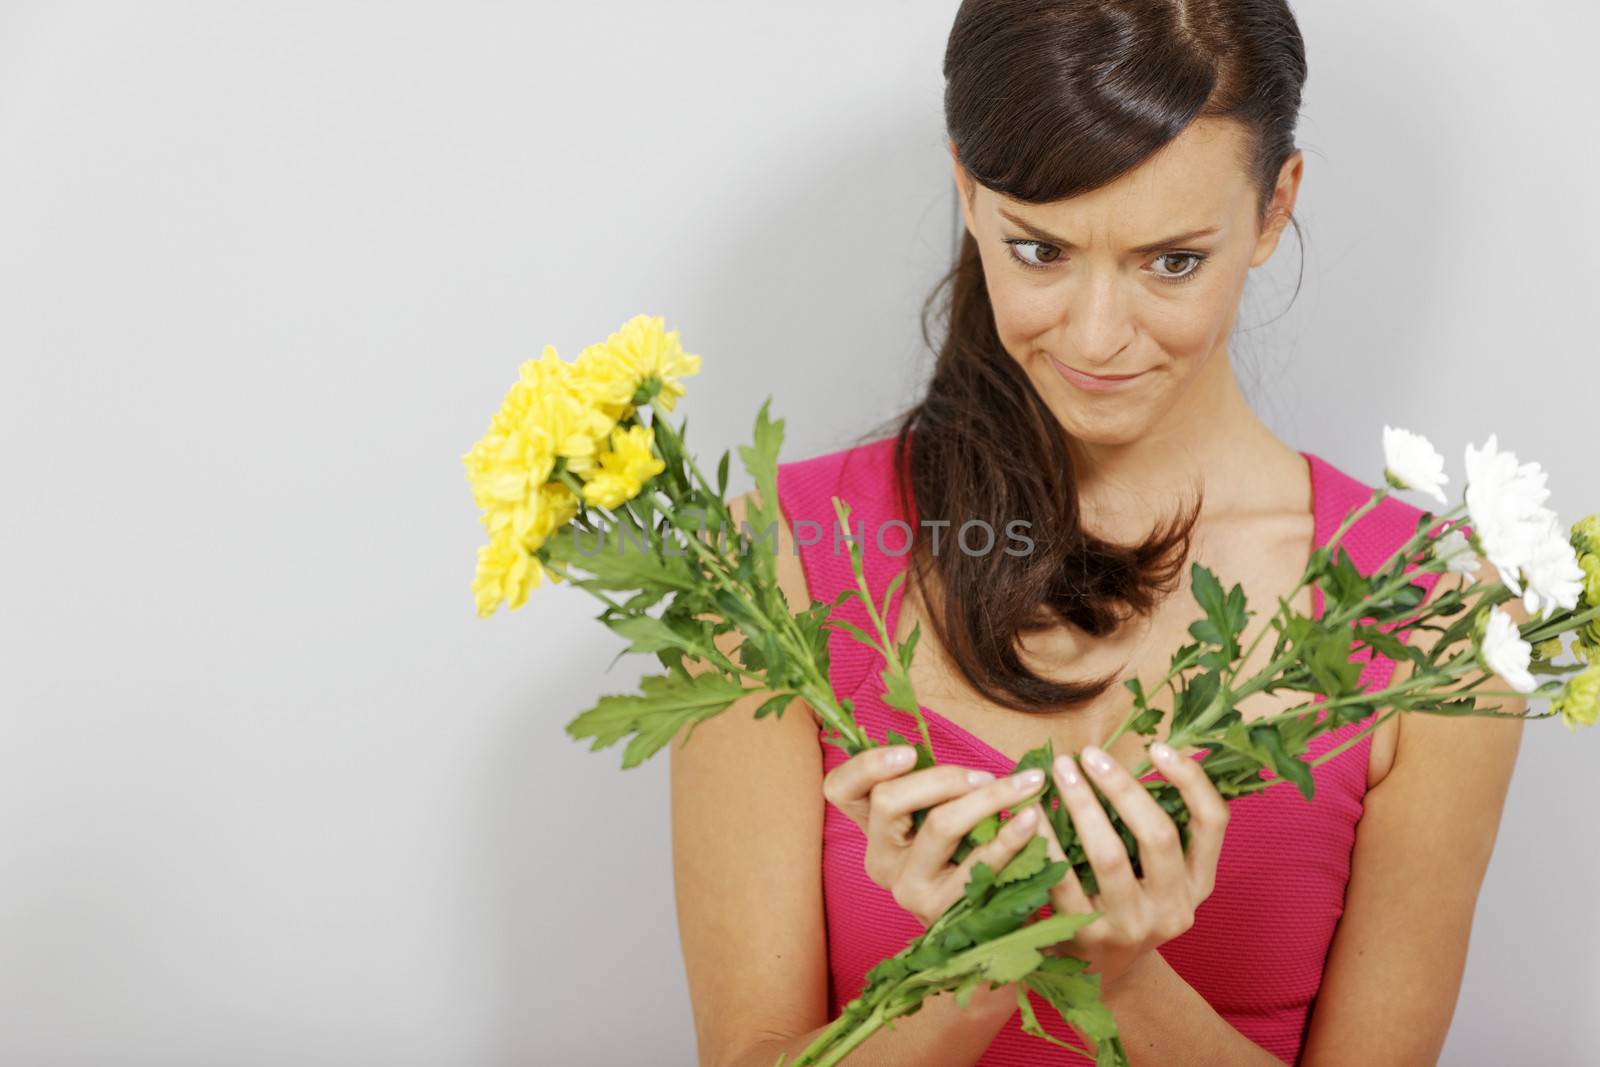 Woman flower arranging by studiofi